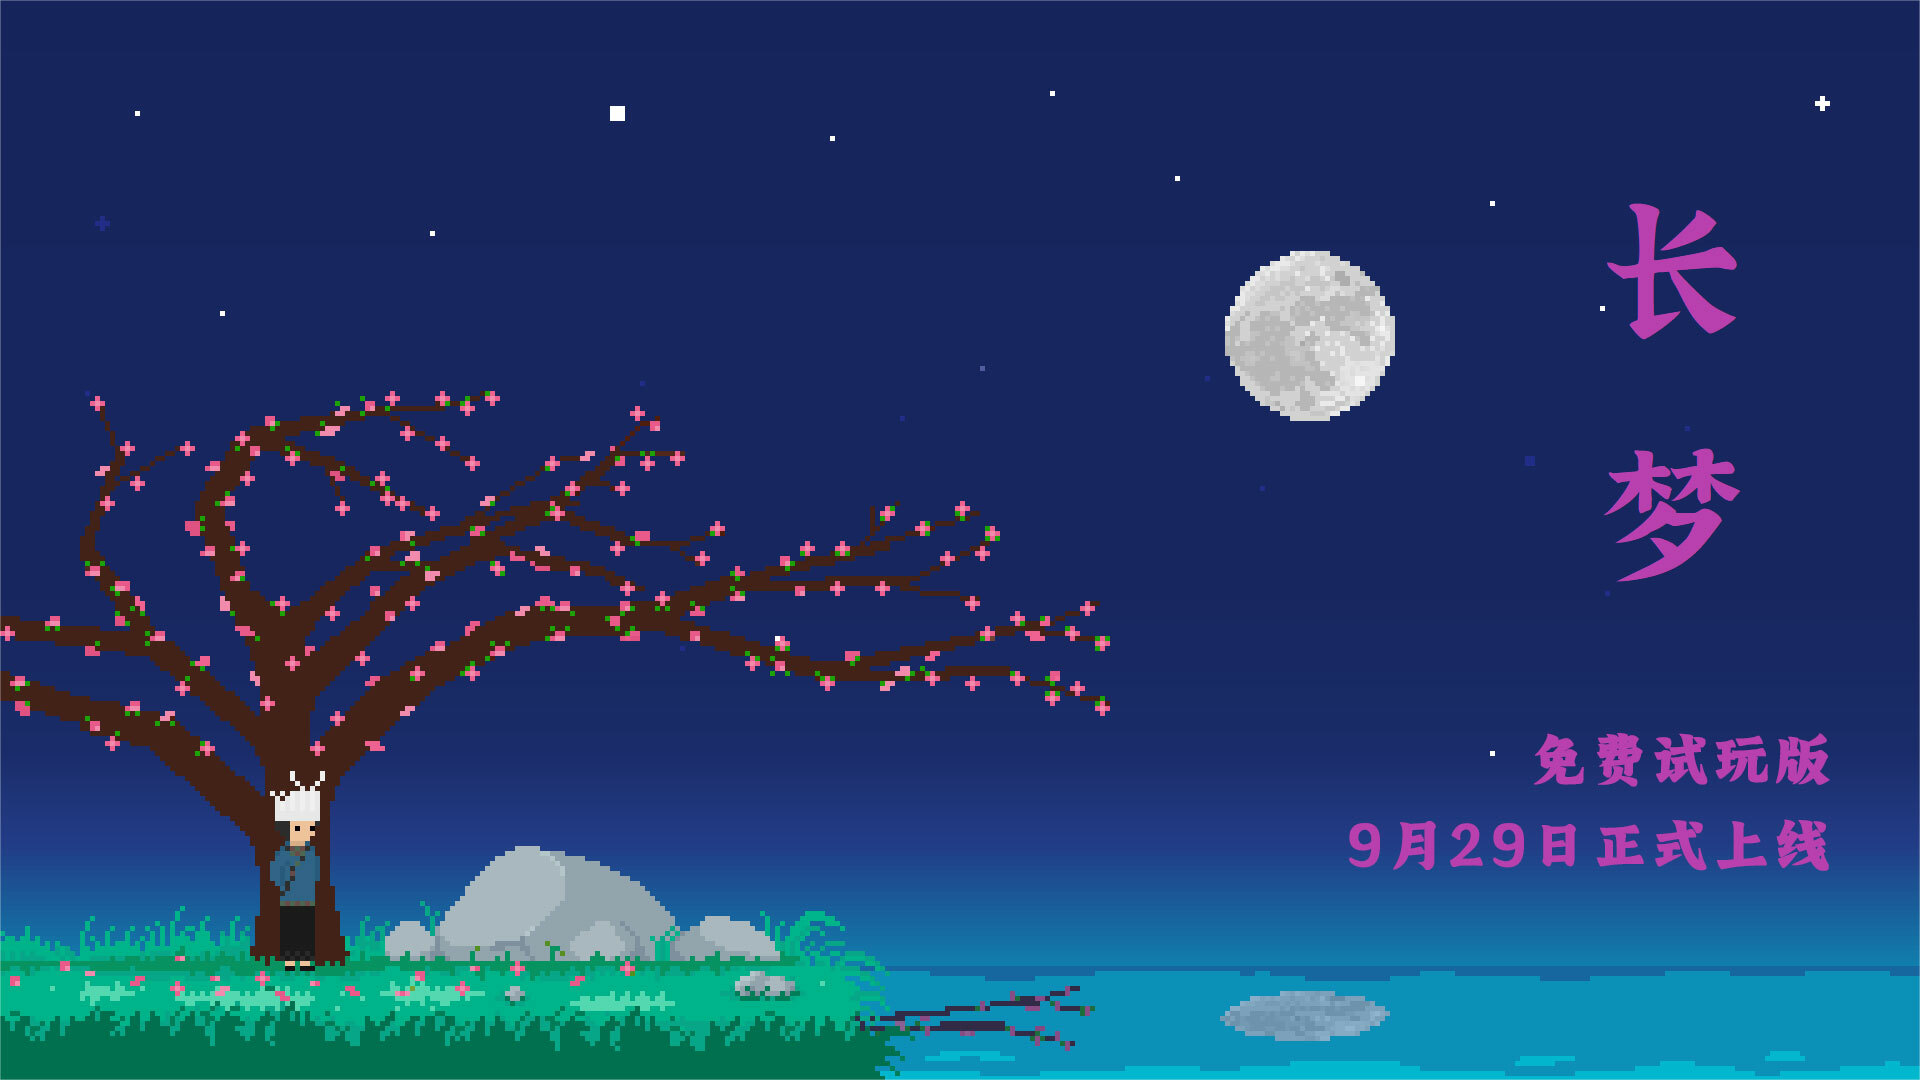 像素叙事游戏《长梦》试玩9月29日上线 扮演邮递员寻找记忆中的桃花树及恋人七妹